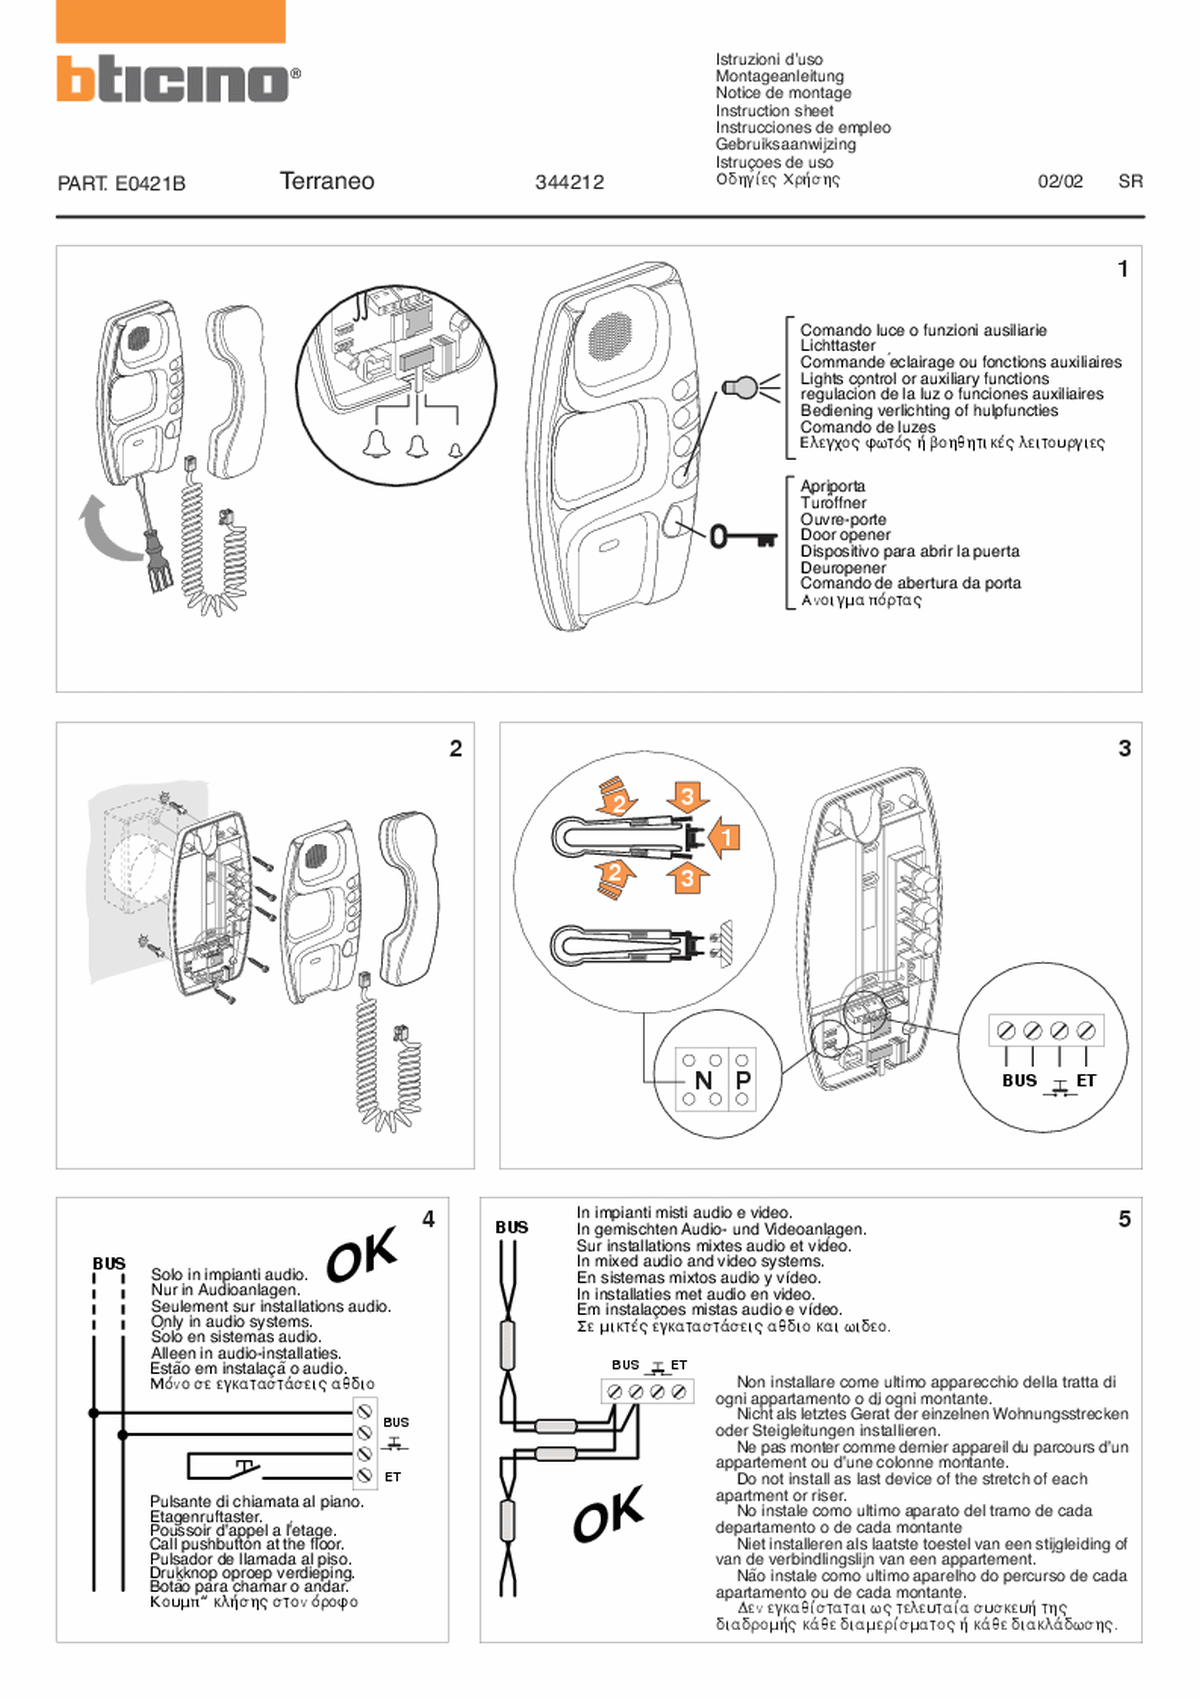 Fabrieksschema T-5 instruction sheet II